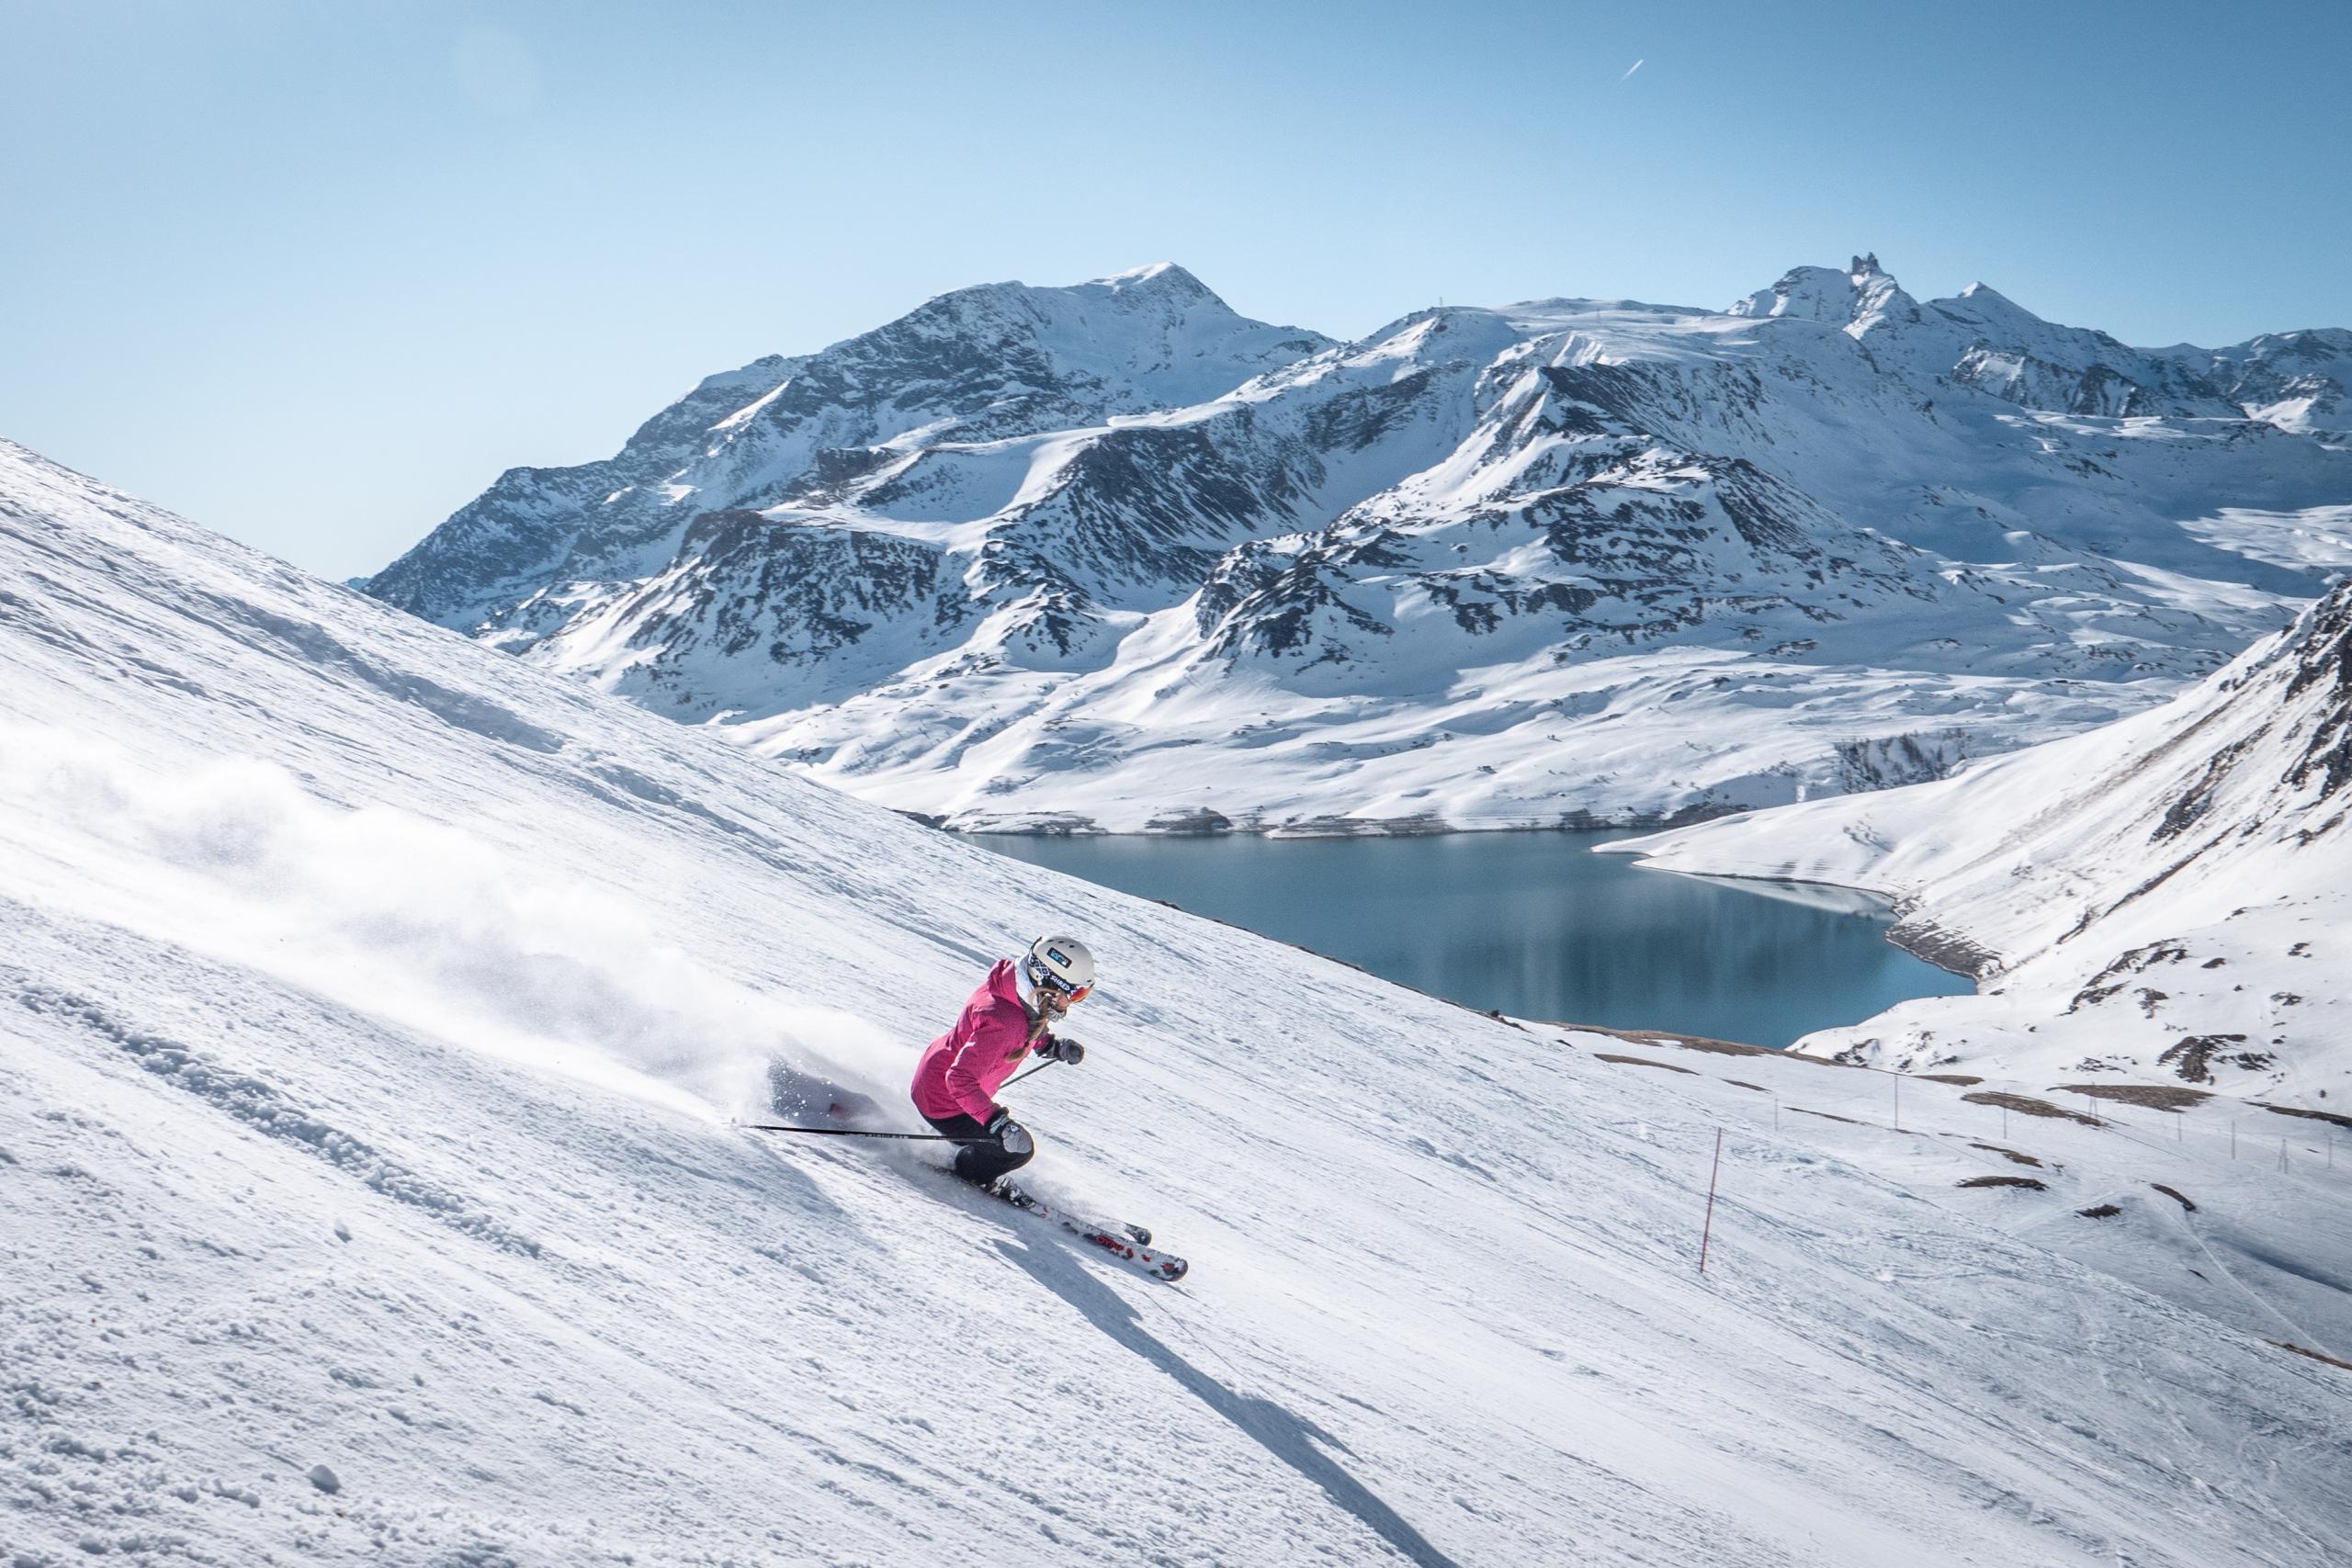 osrodek narciarski Val Cenis